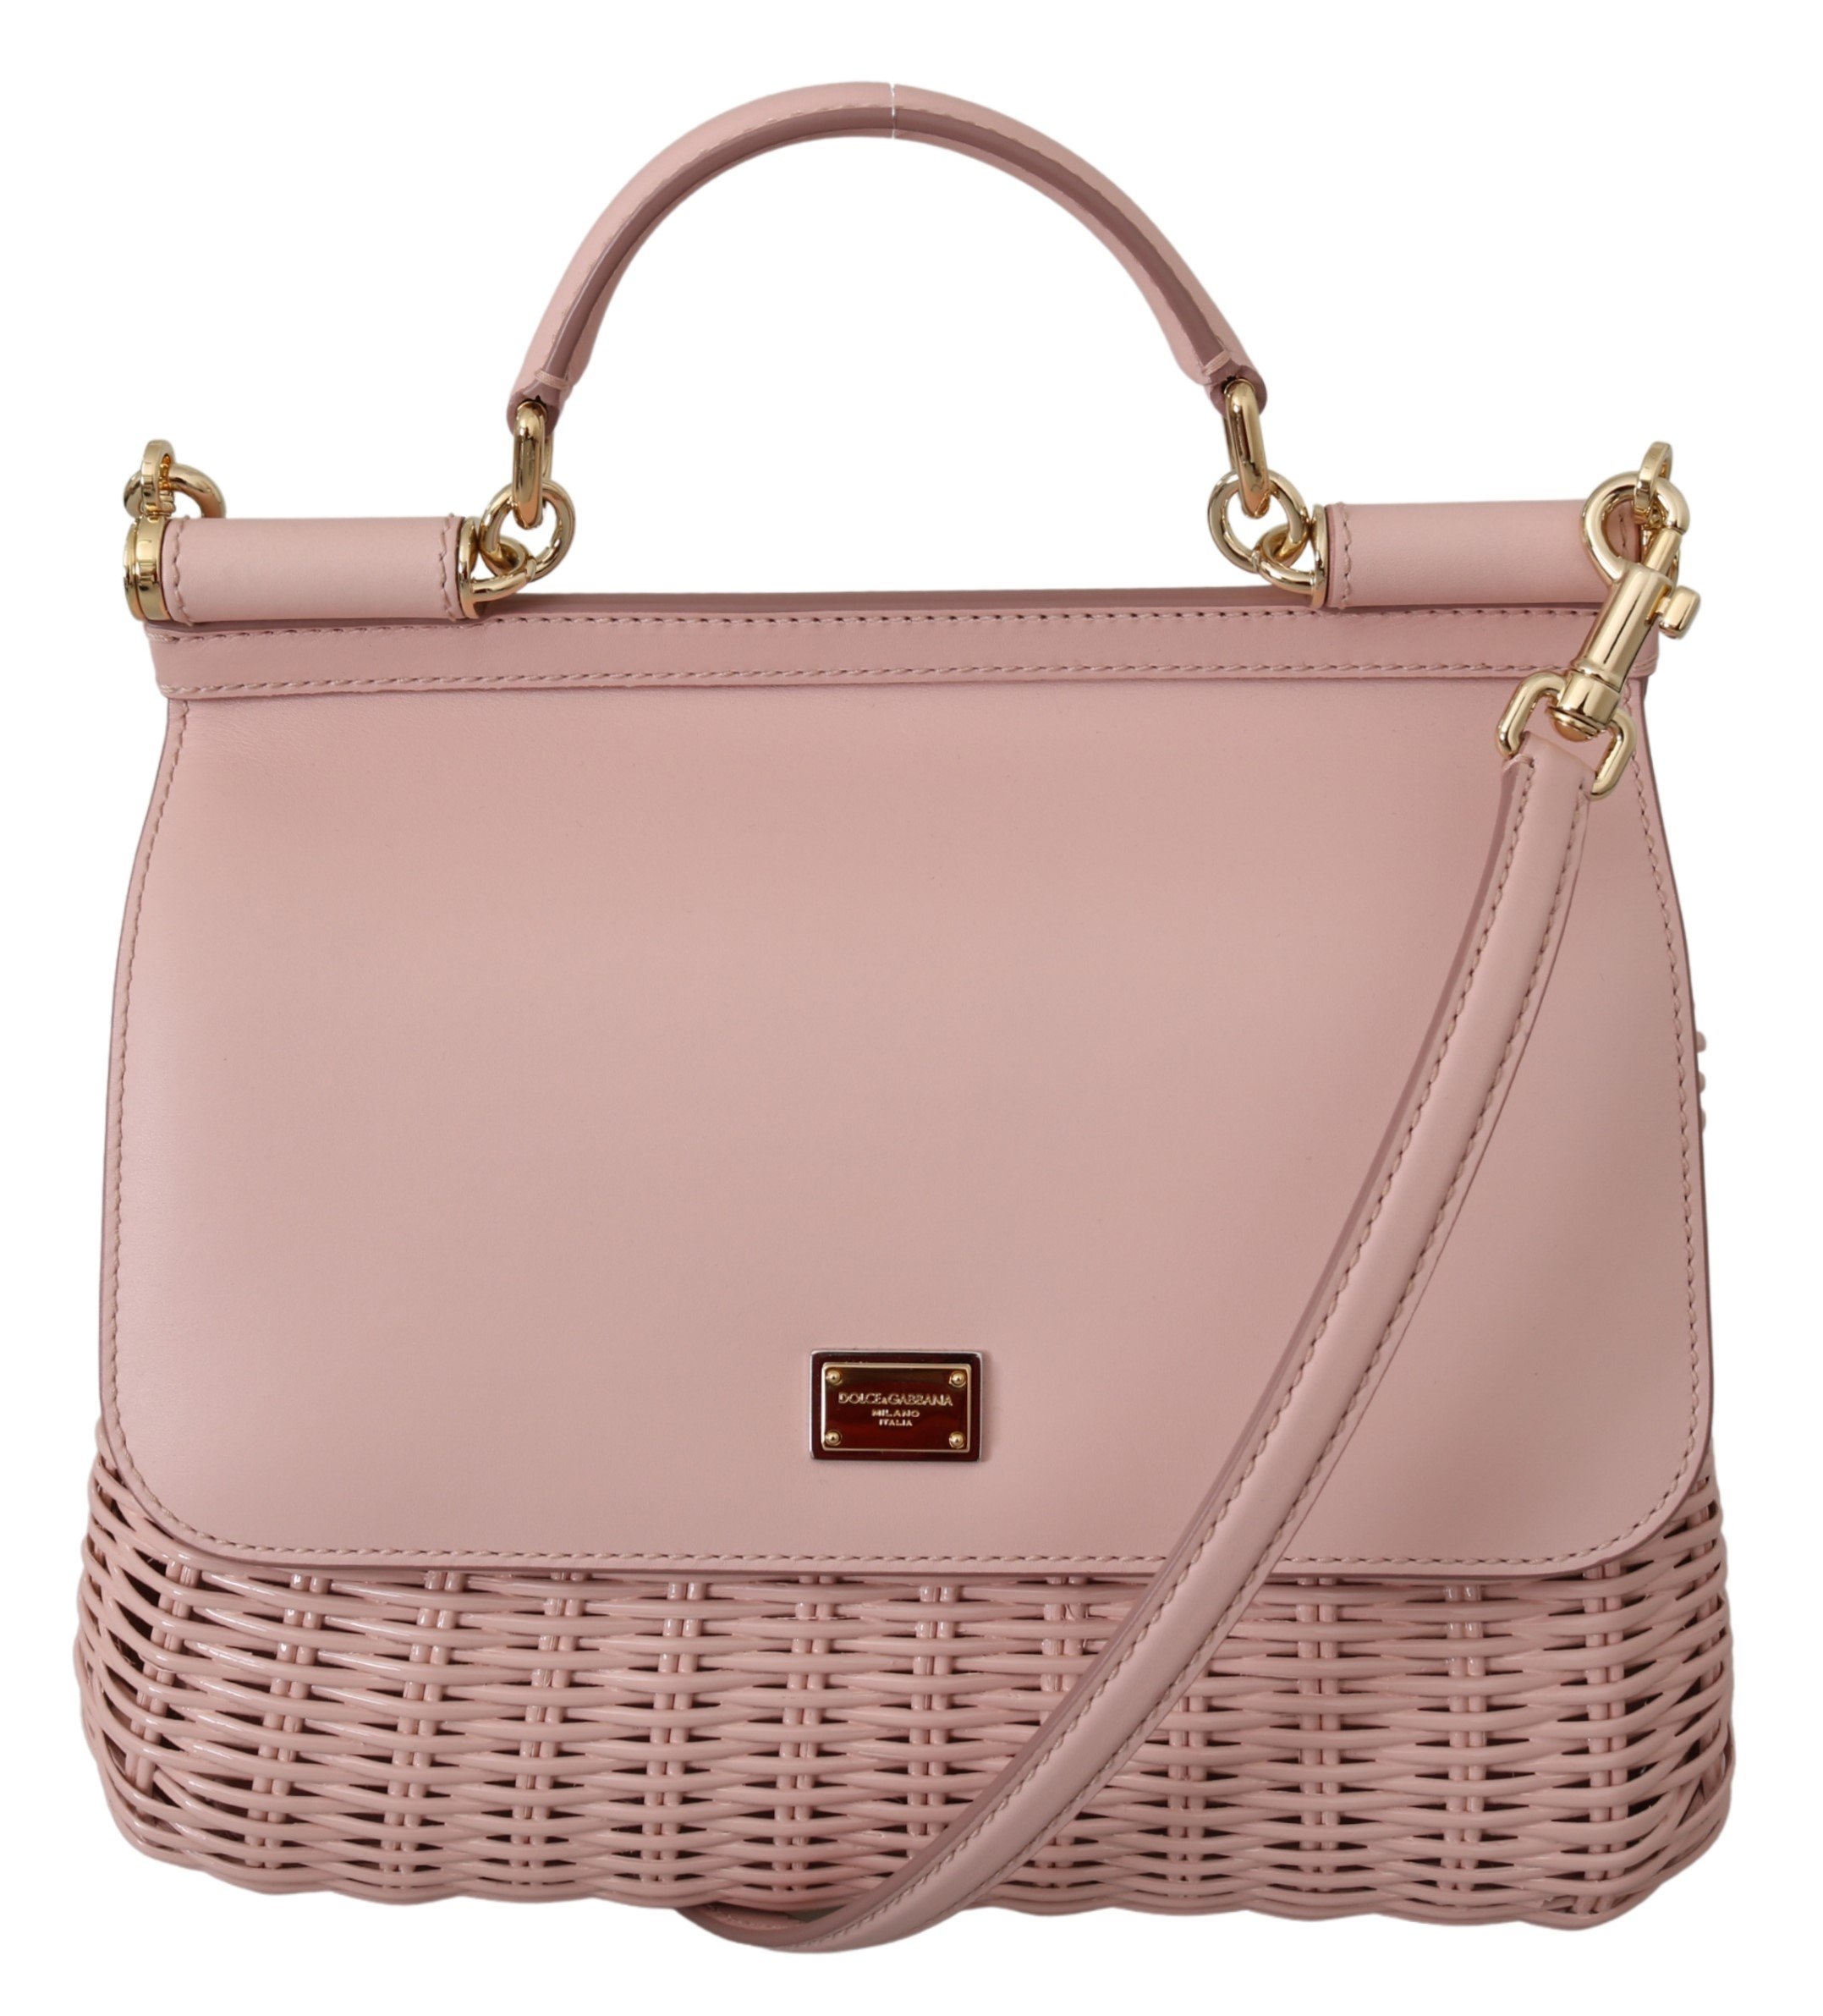 Dolce & Gabbana Women's SICILY Shoulder Bag Pink VAS10006